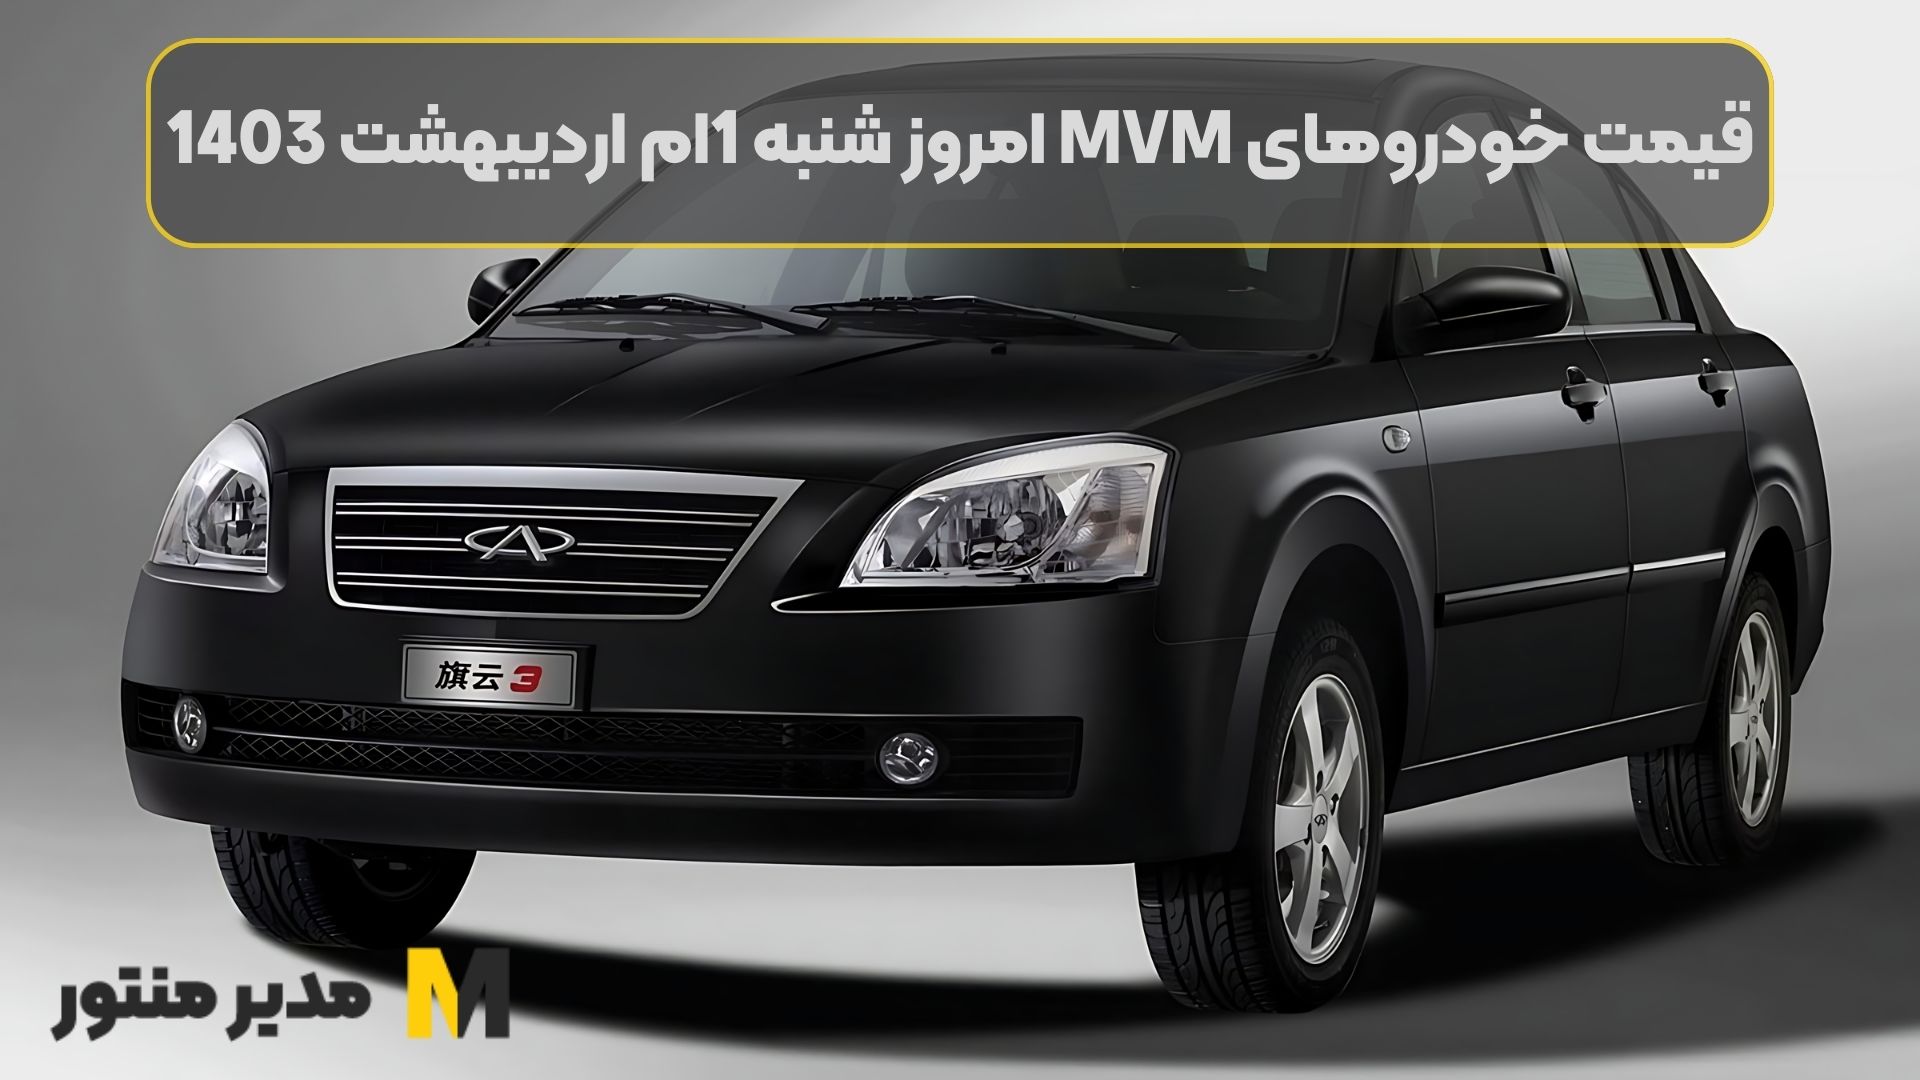 قیمت خودروهای MVM امروز شنبه 1ام اردیبهشت 1403